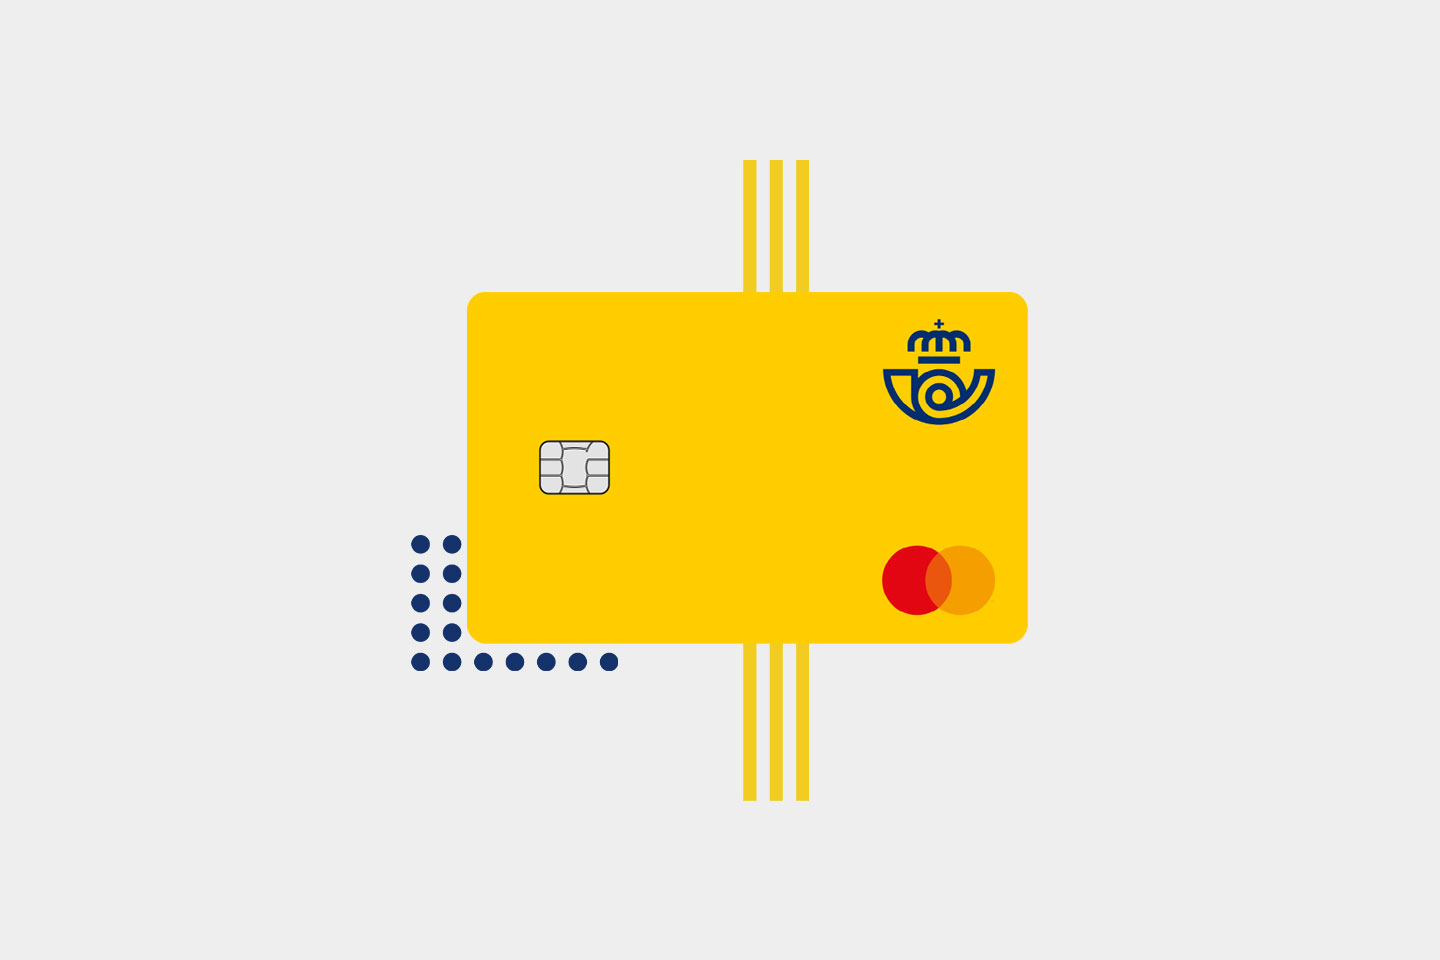 Nace Correos Prepago, una tarjeta recargable que facilita los pagos seguros  a todo tipo de clientes - Marketing Directo